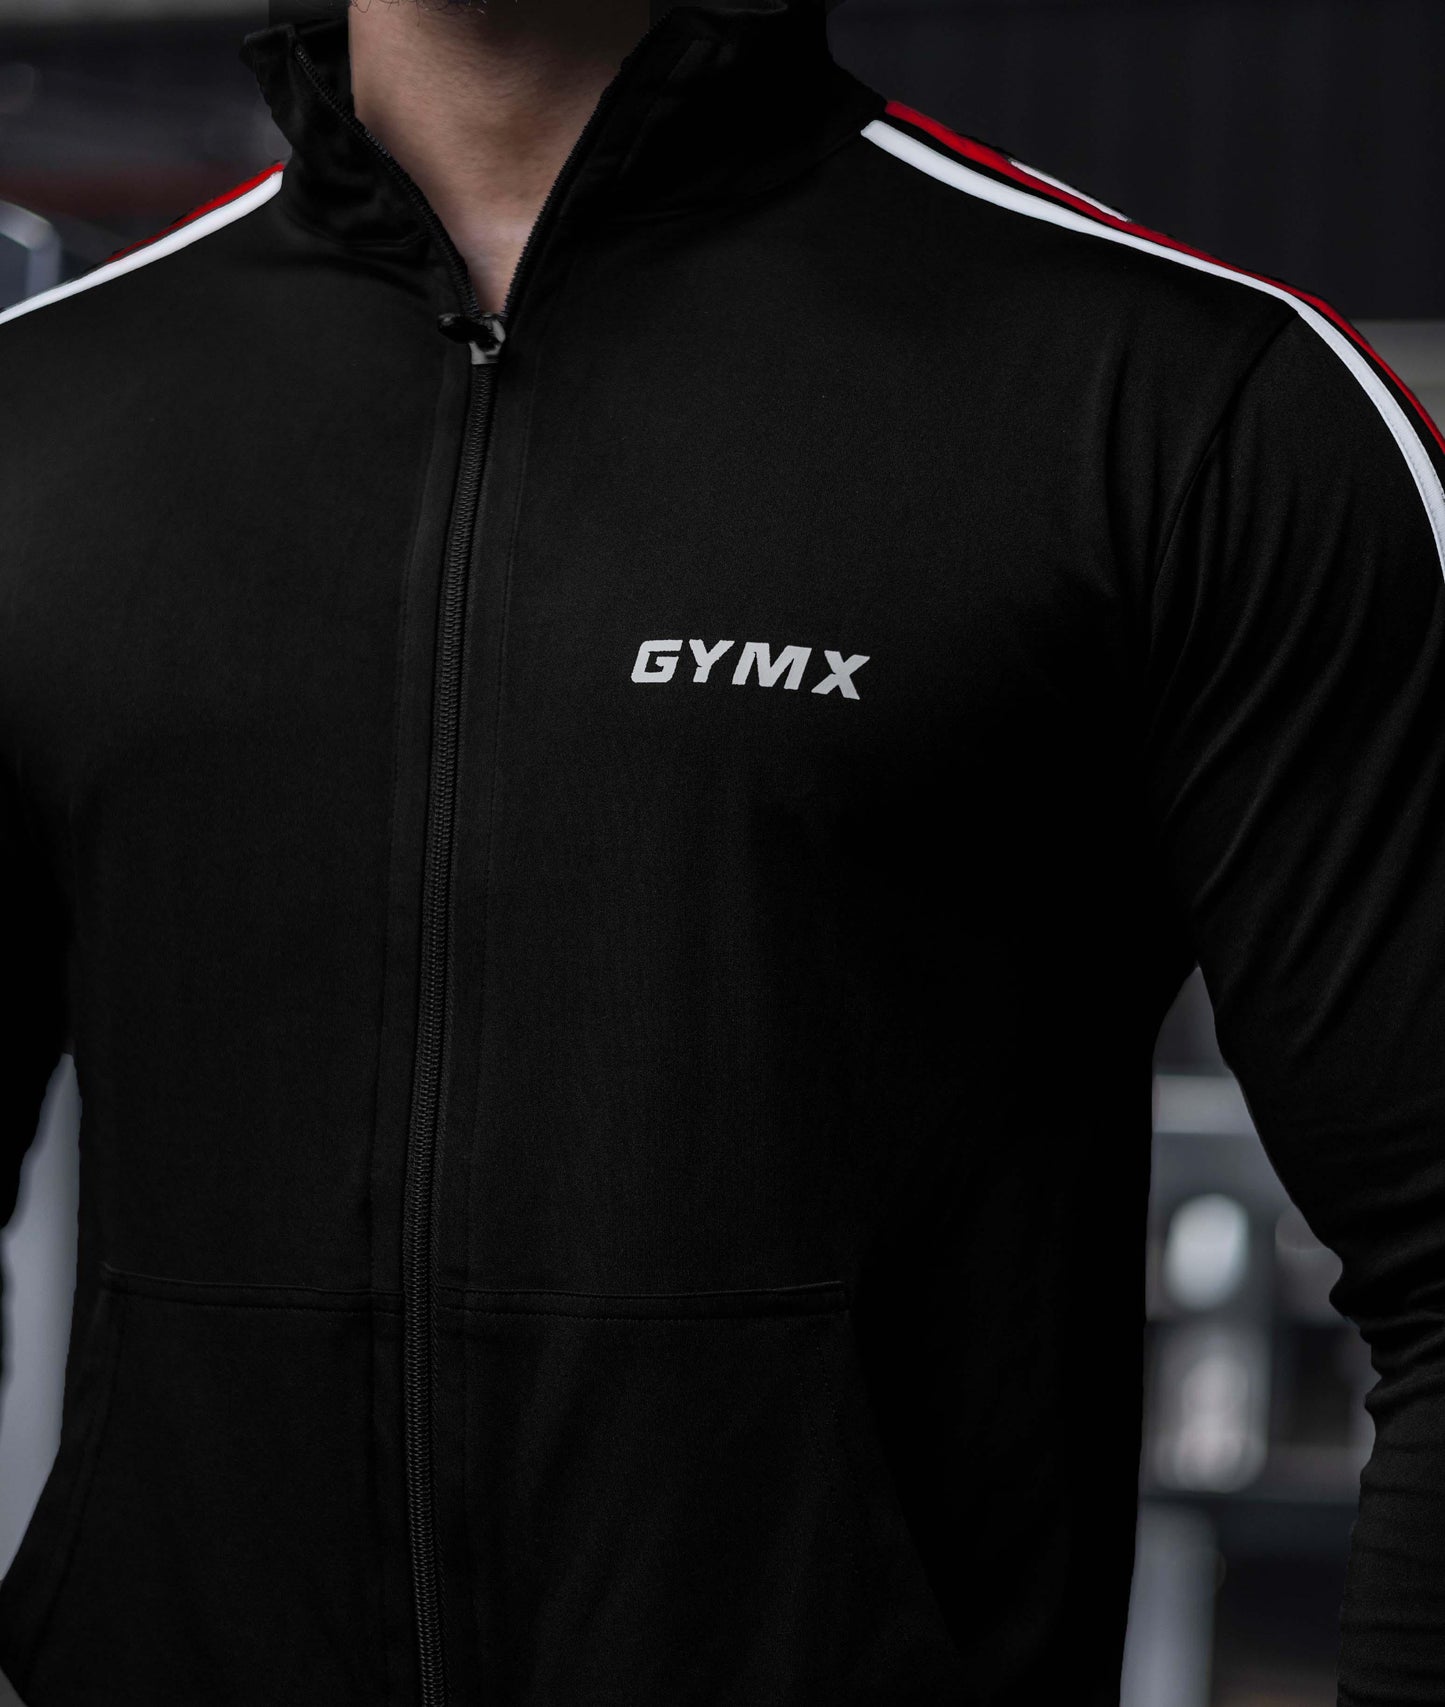 Genesis GymX Jackets: Jet Black